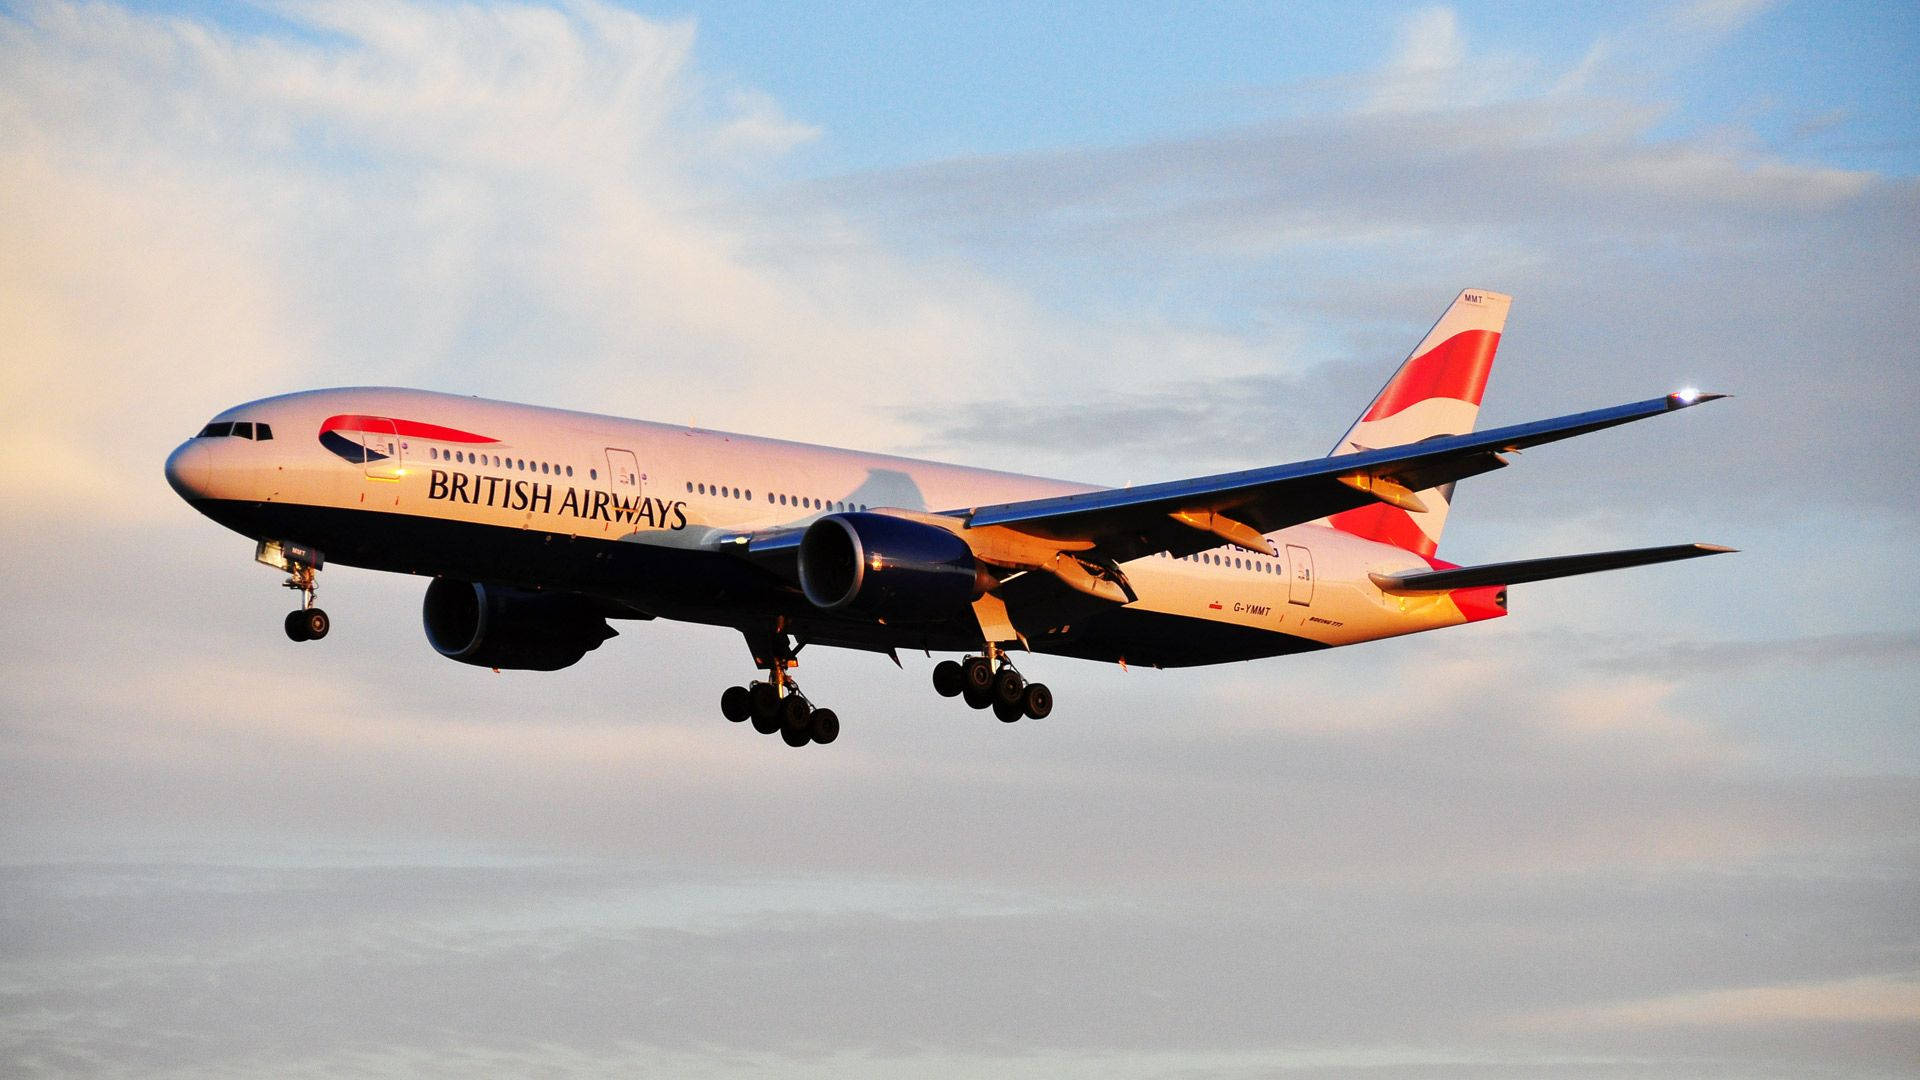 Fliegendesflugzeug Von British Airways An Einem Sonnigen Tag. Wallpaper